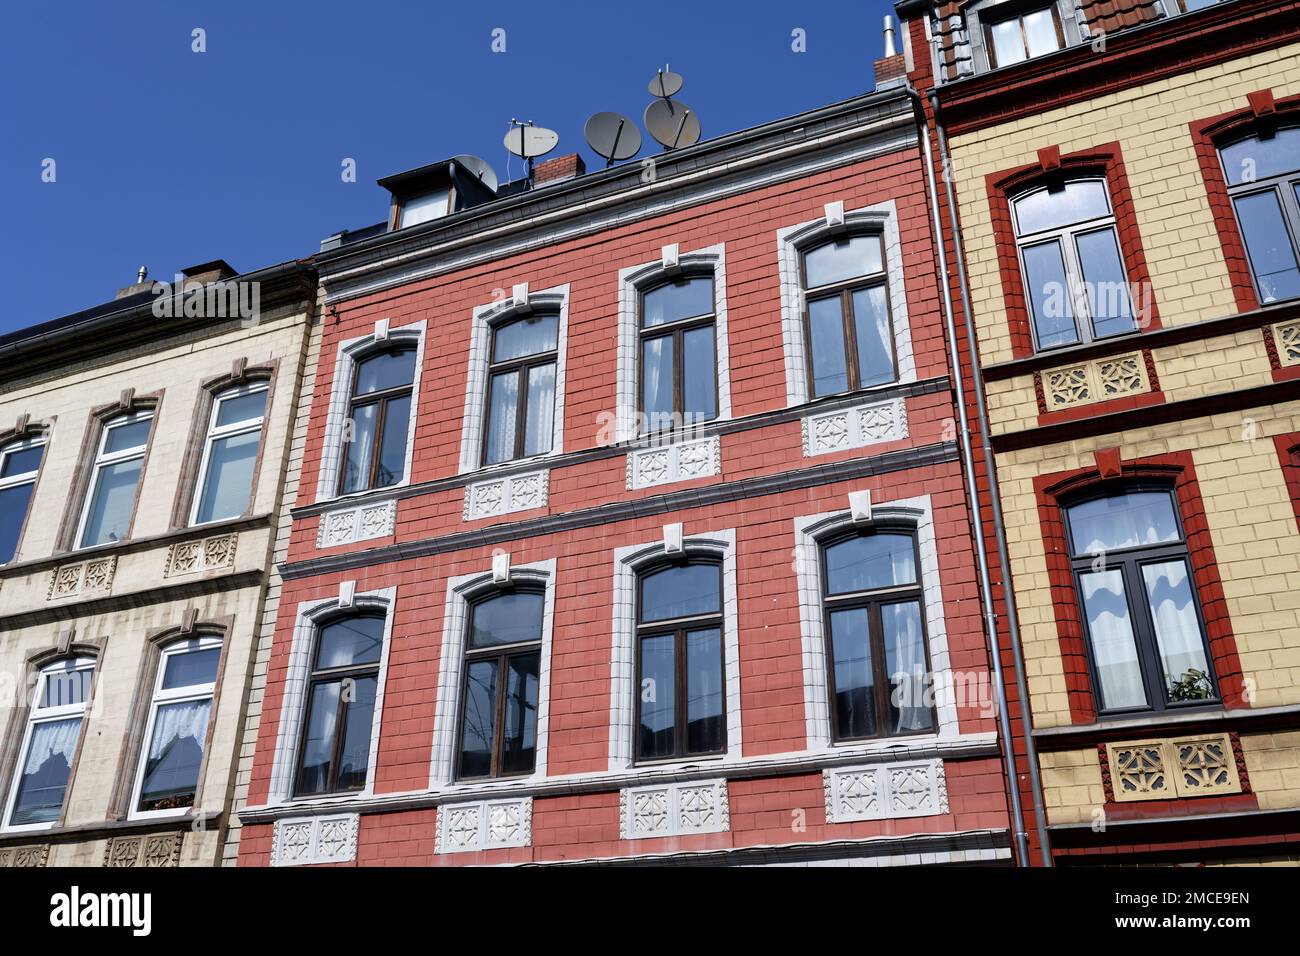 maisons typiques de location de pastel colorées de la fin du 19th siècle à cologne ehrenfeld Banque D'Images